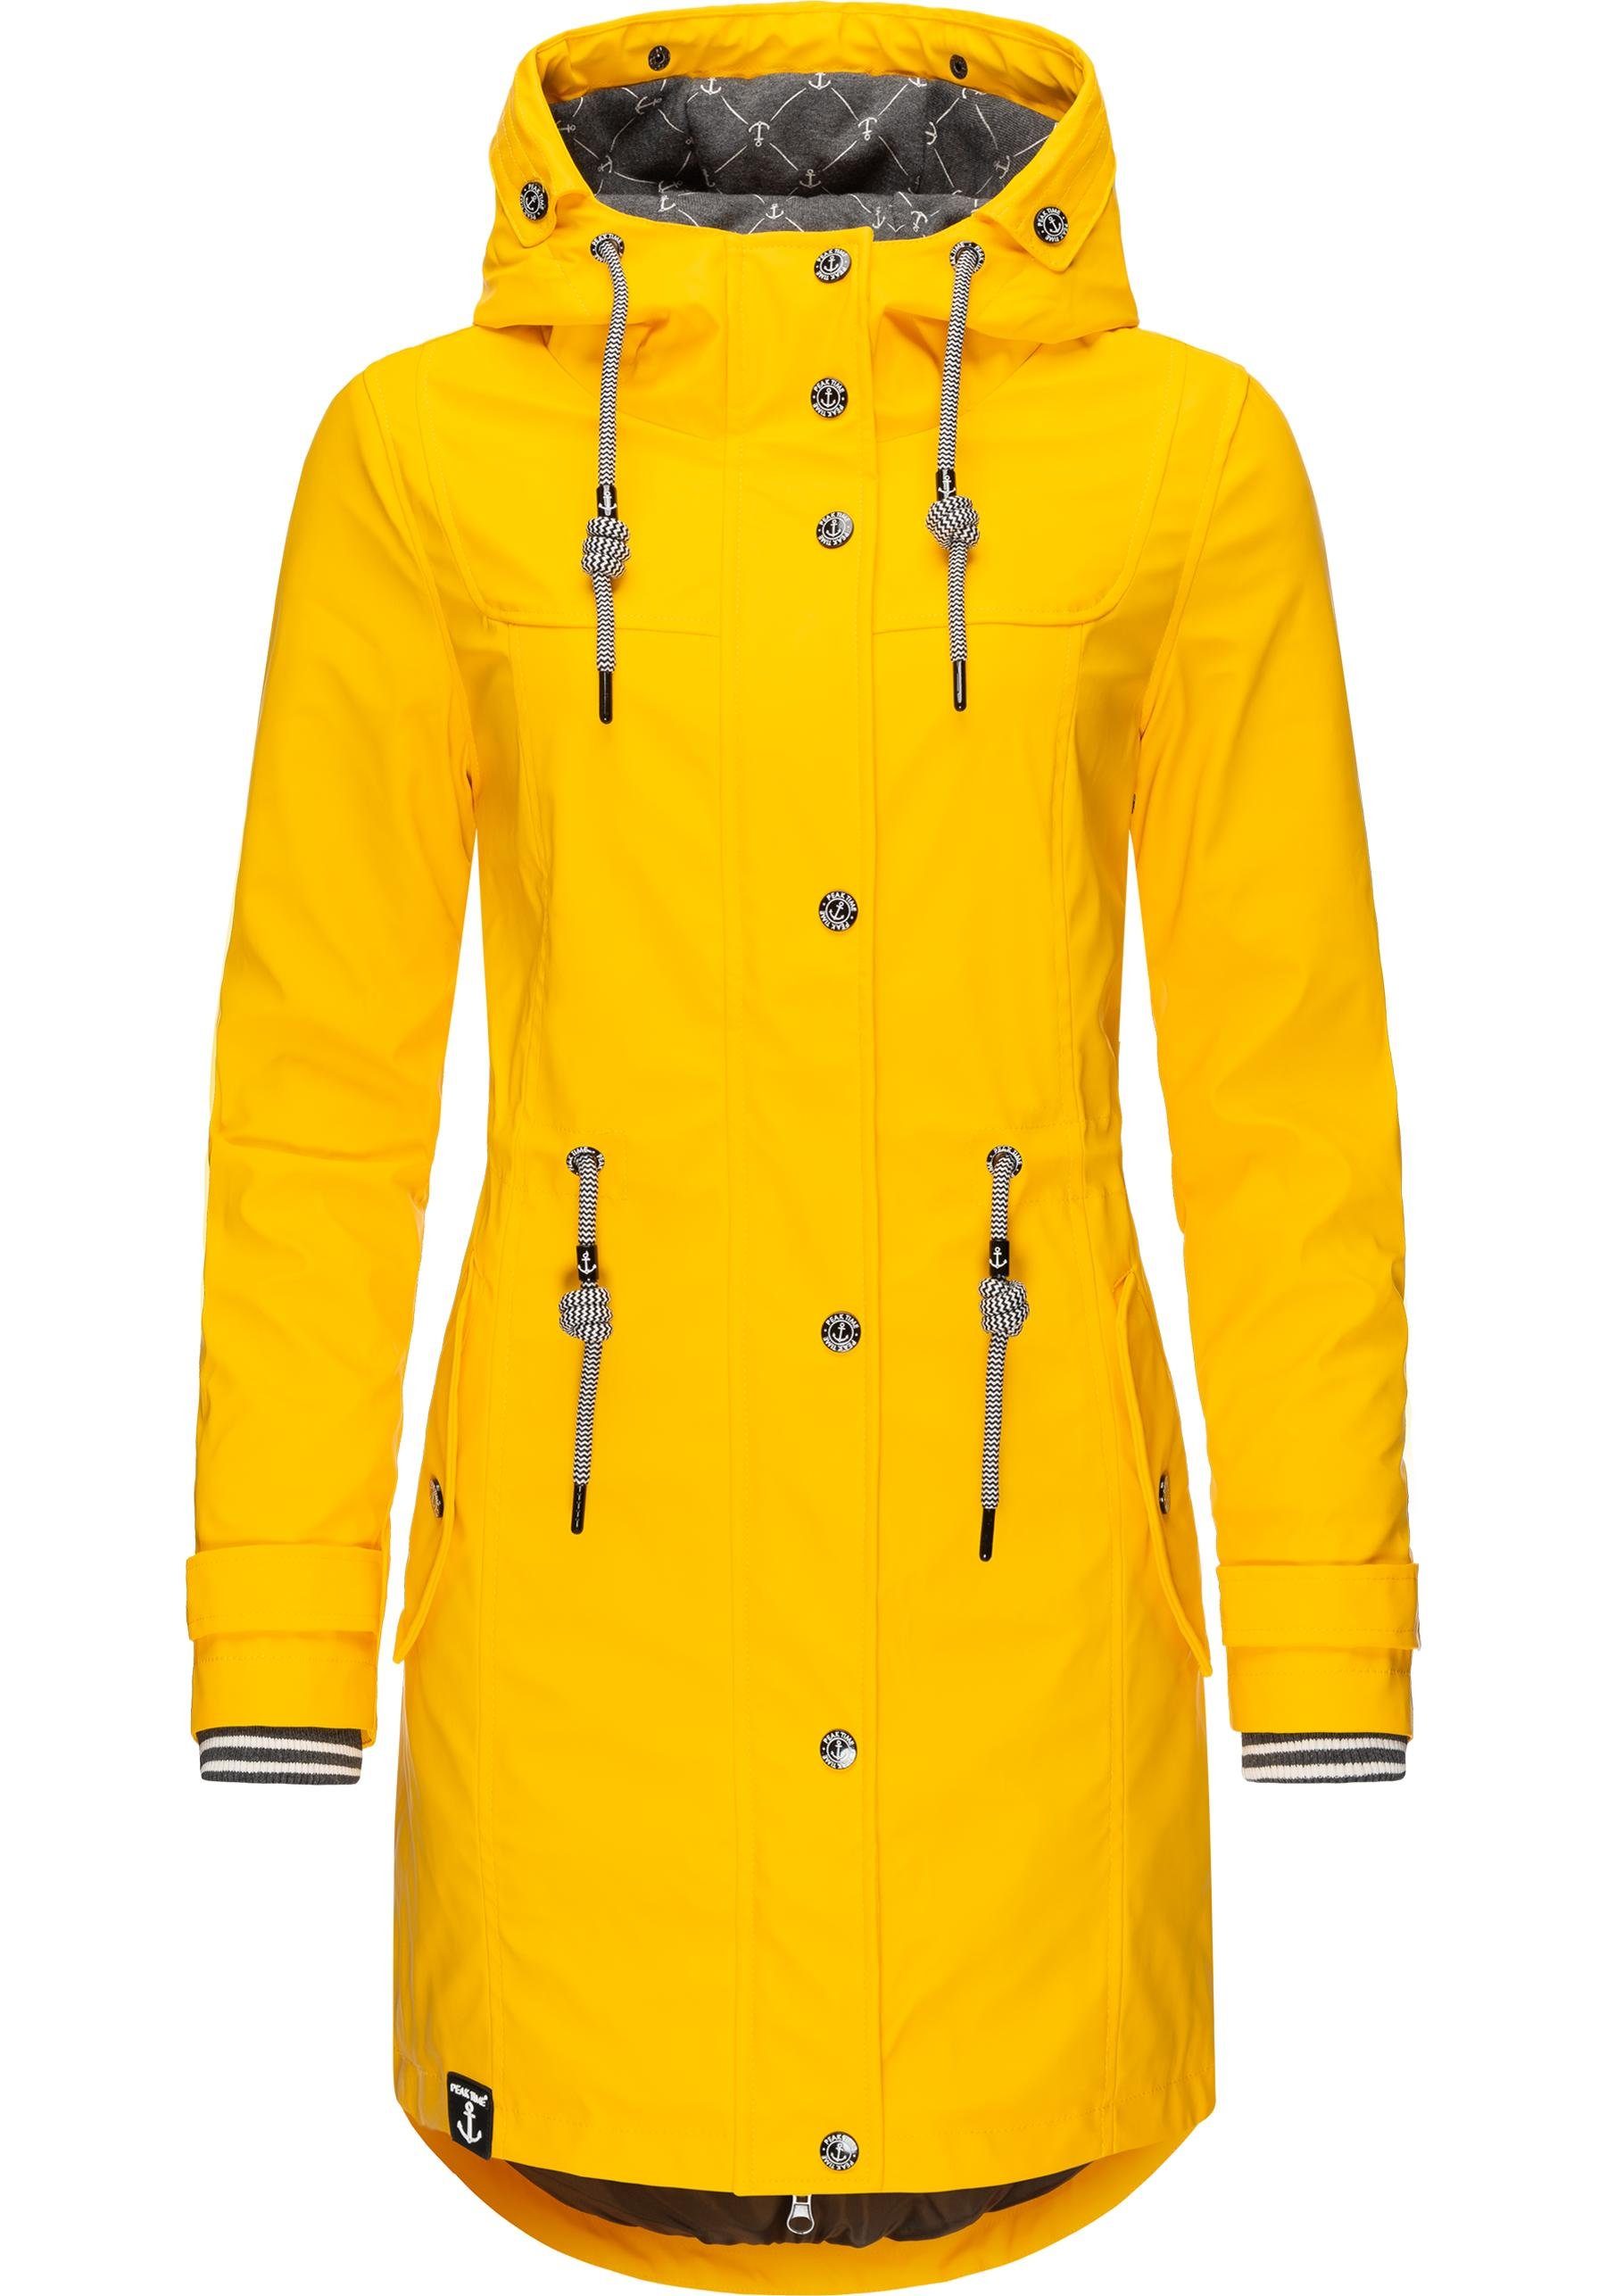 Damen Regenmantel TIME PEAK für taillierter L60042 stylisch dottergelb Regenjacke